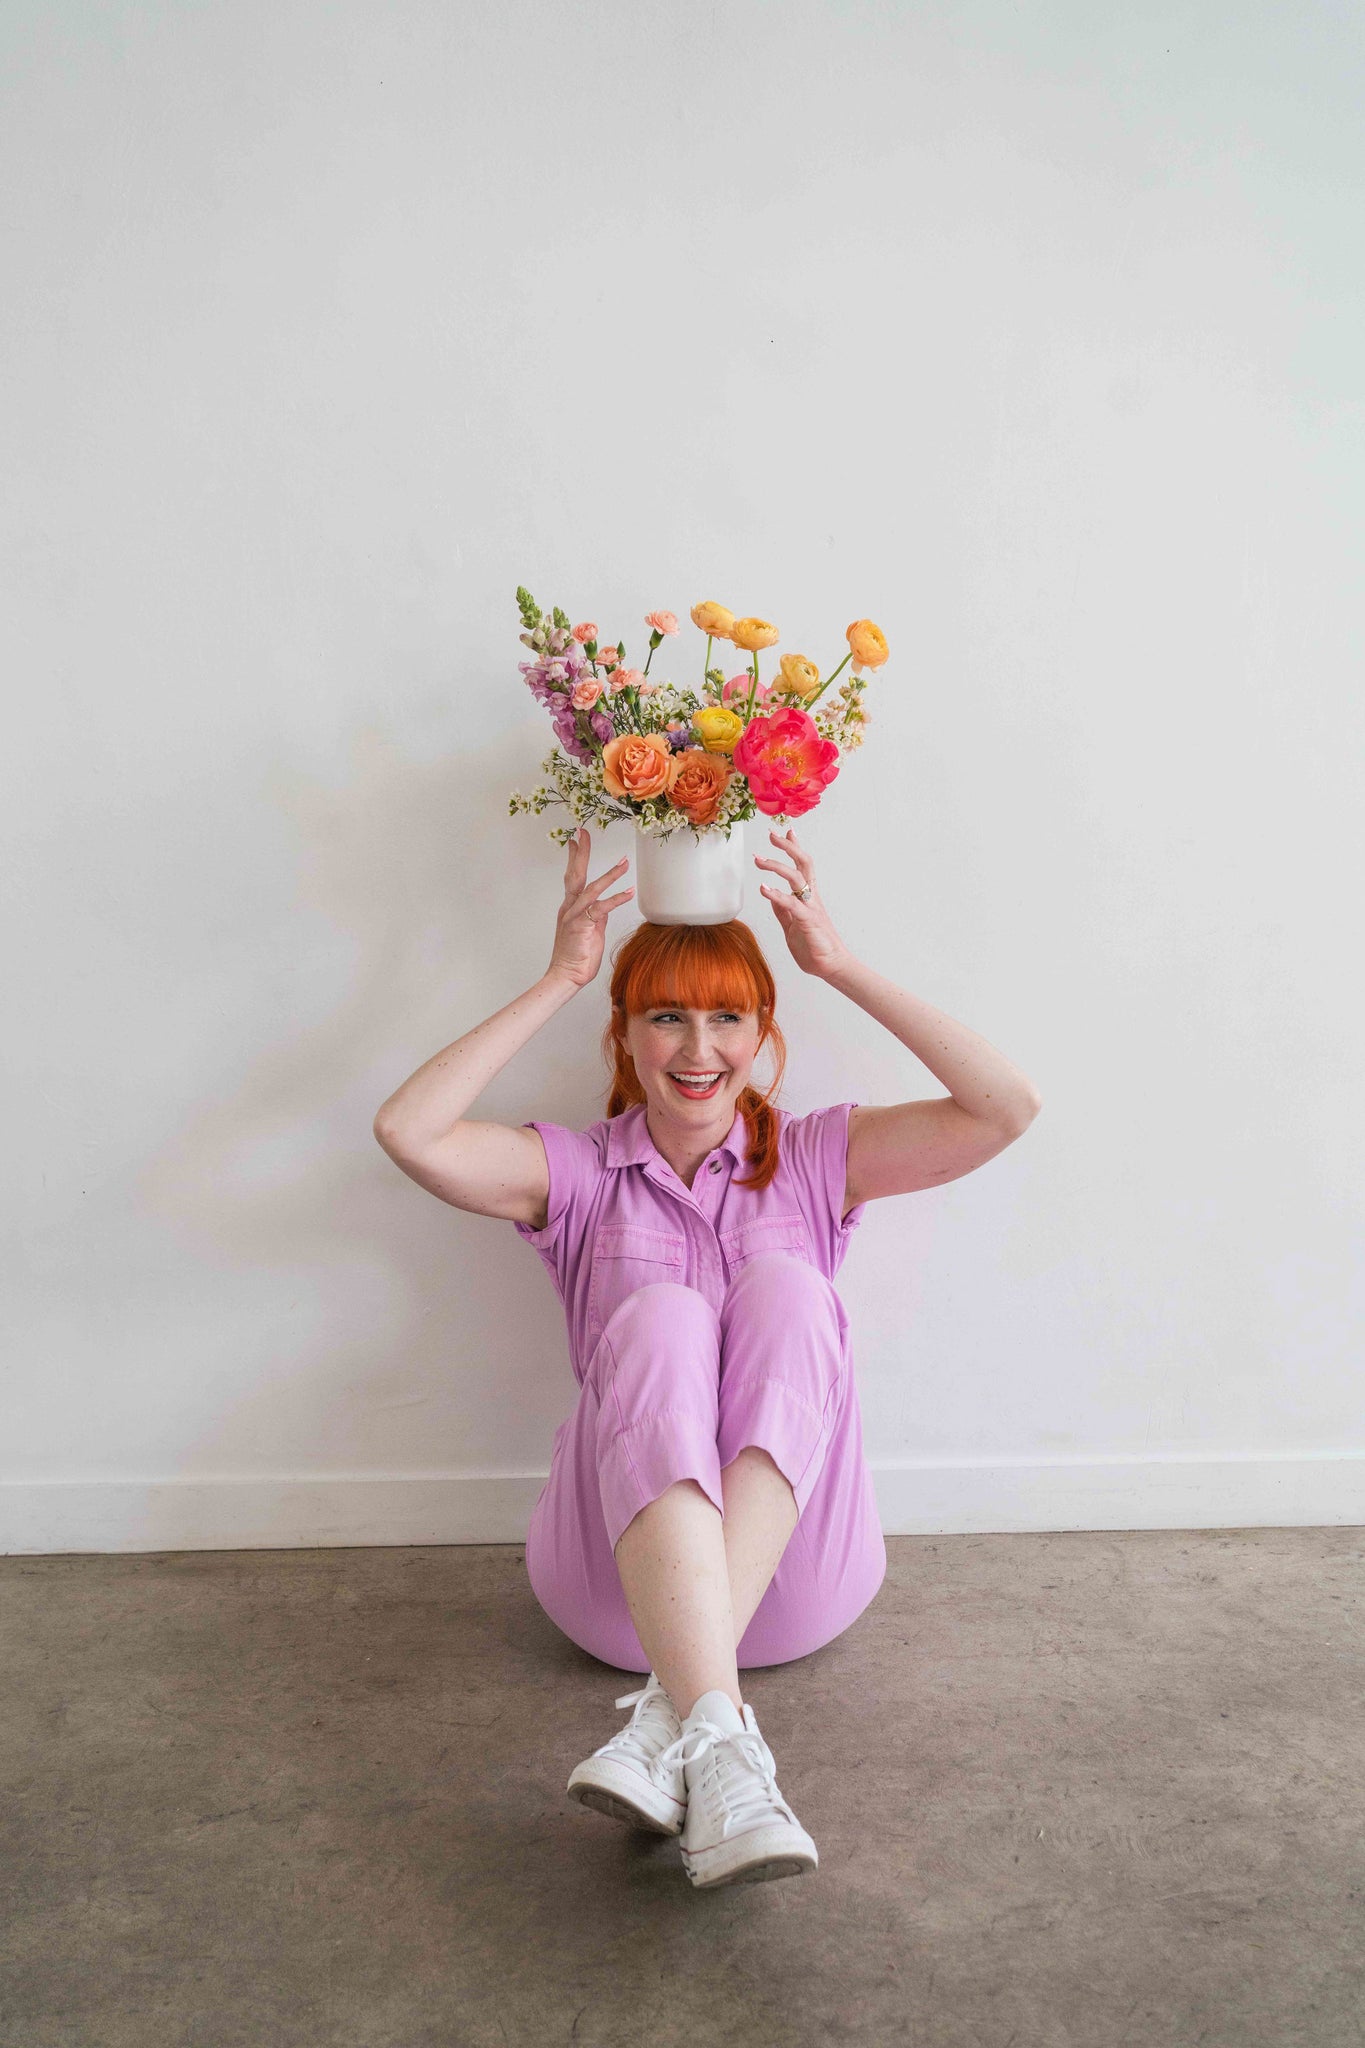 Florist balancing a Mother’s Day flower arrangement on her head